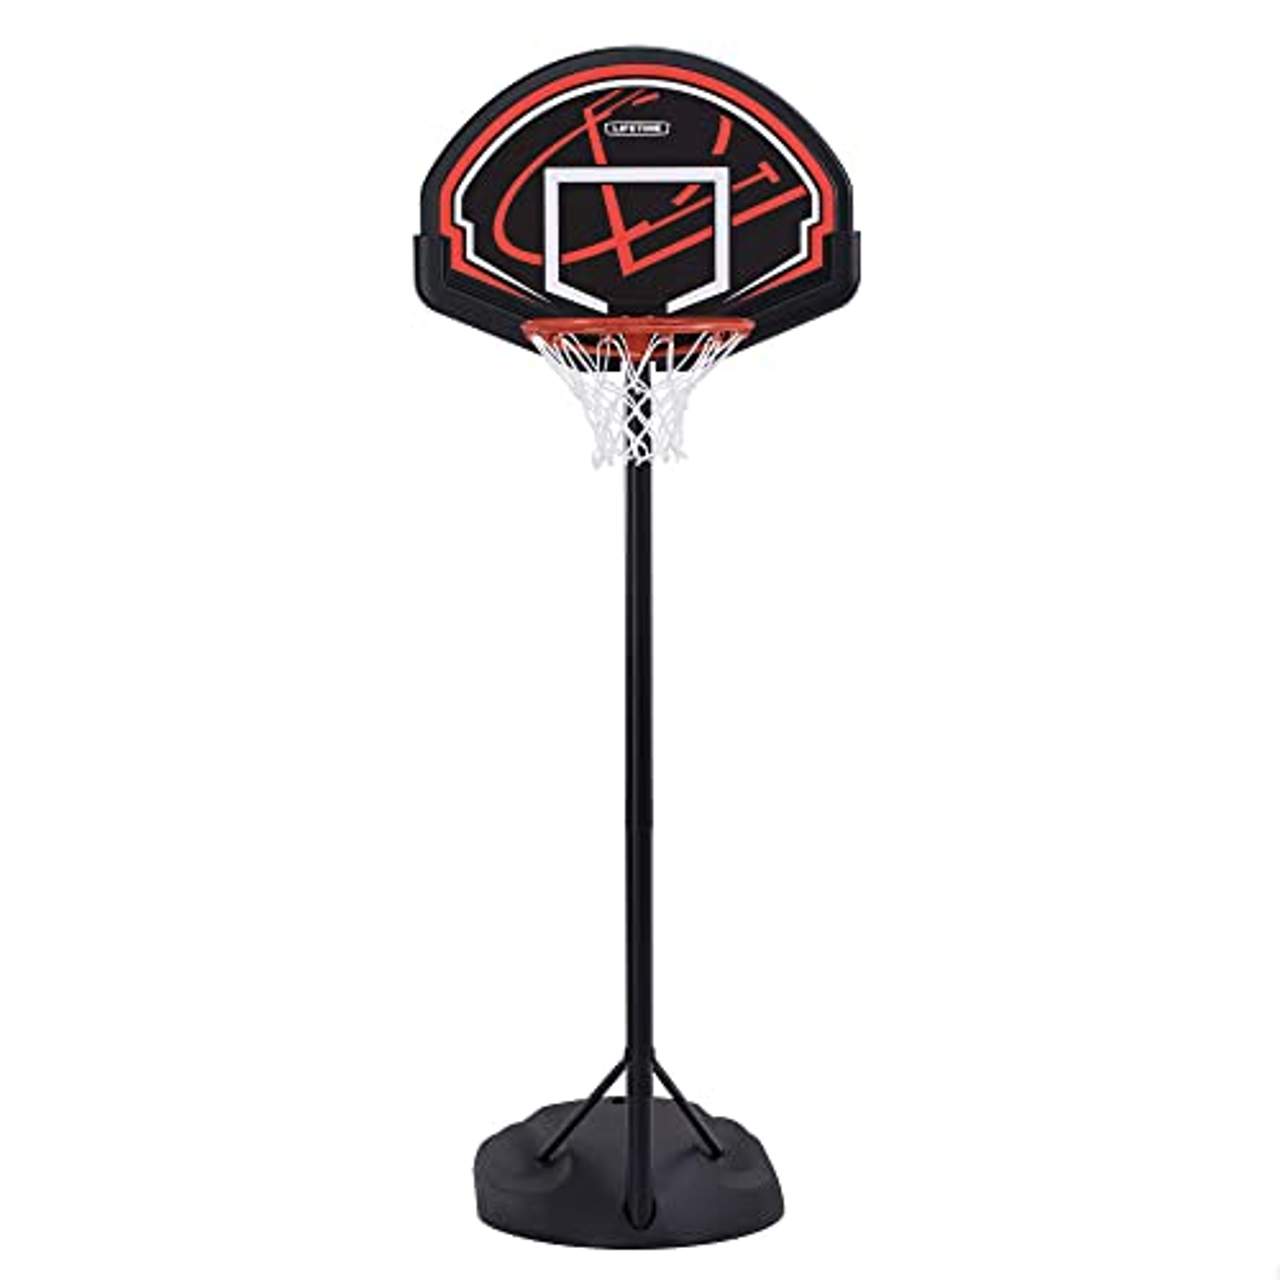 LIFETIME Rebound Mobile Basketballanlage Basketballständer